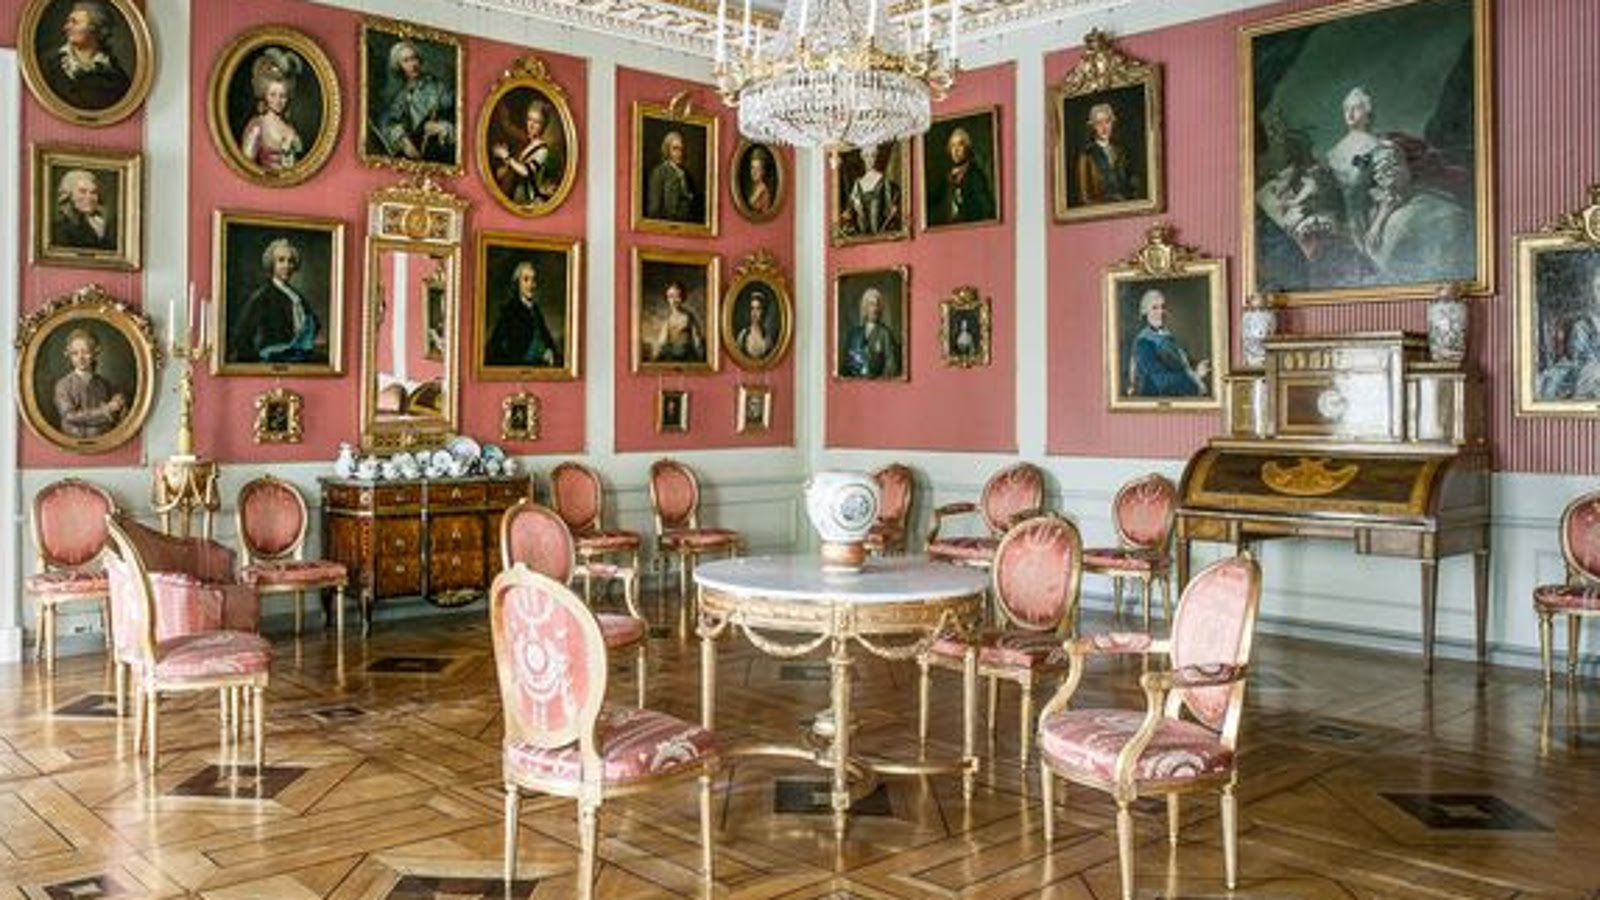 Kuvassa on etualalla kustavilaistyyliset valko-punaiset huonekalut ja vaaleanpunaisilla seinillä runsaasti pienikokoisia tauluja.  Katossa on on reunoilla koristeelliset ornamentit.